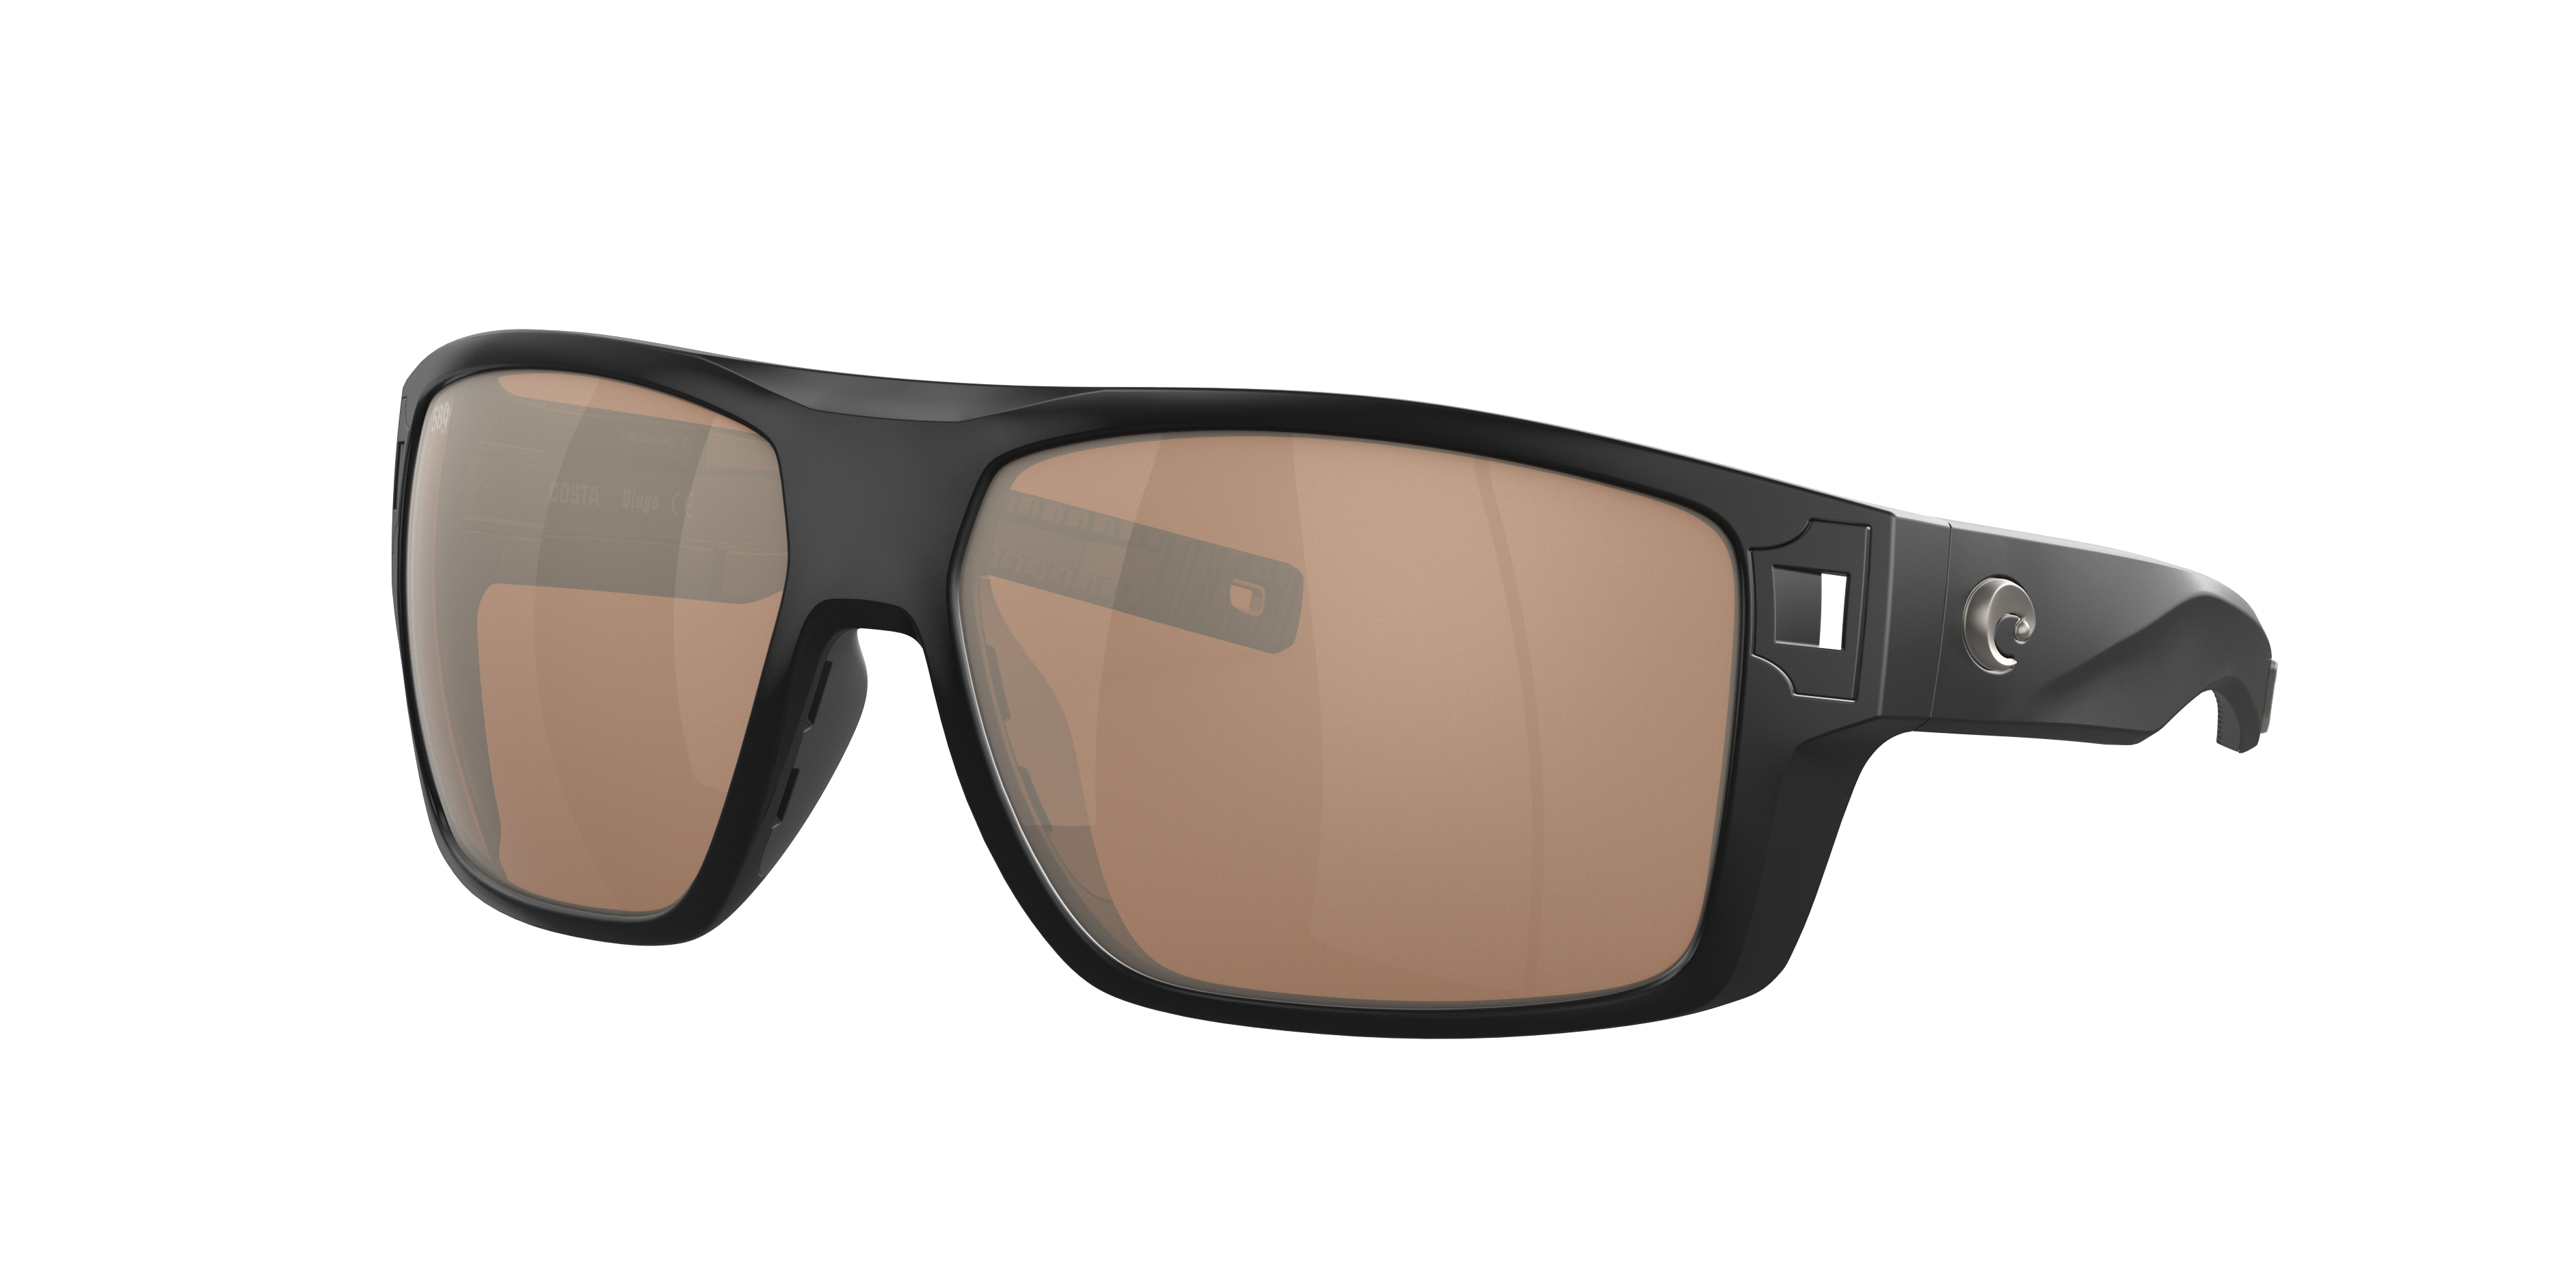 NEW Costa Del Mar DIEGO Polarized Sunglasses Matte Black / Green Glass 580G  97963837613 | eBay